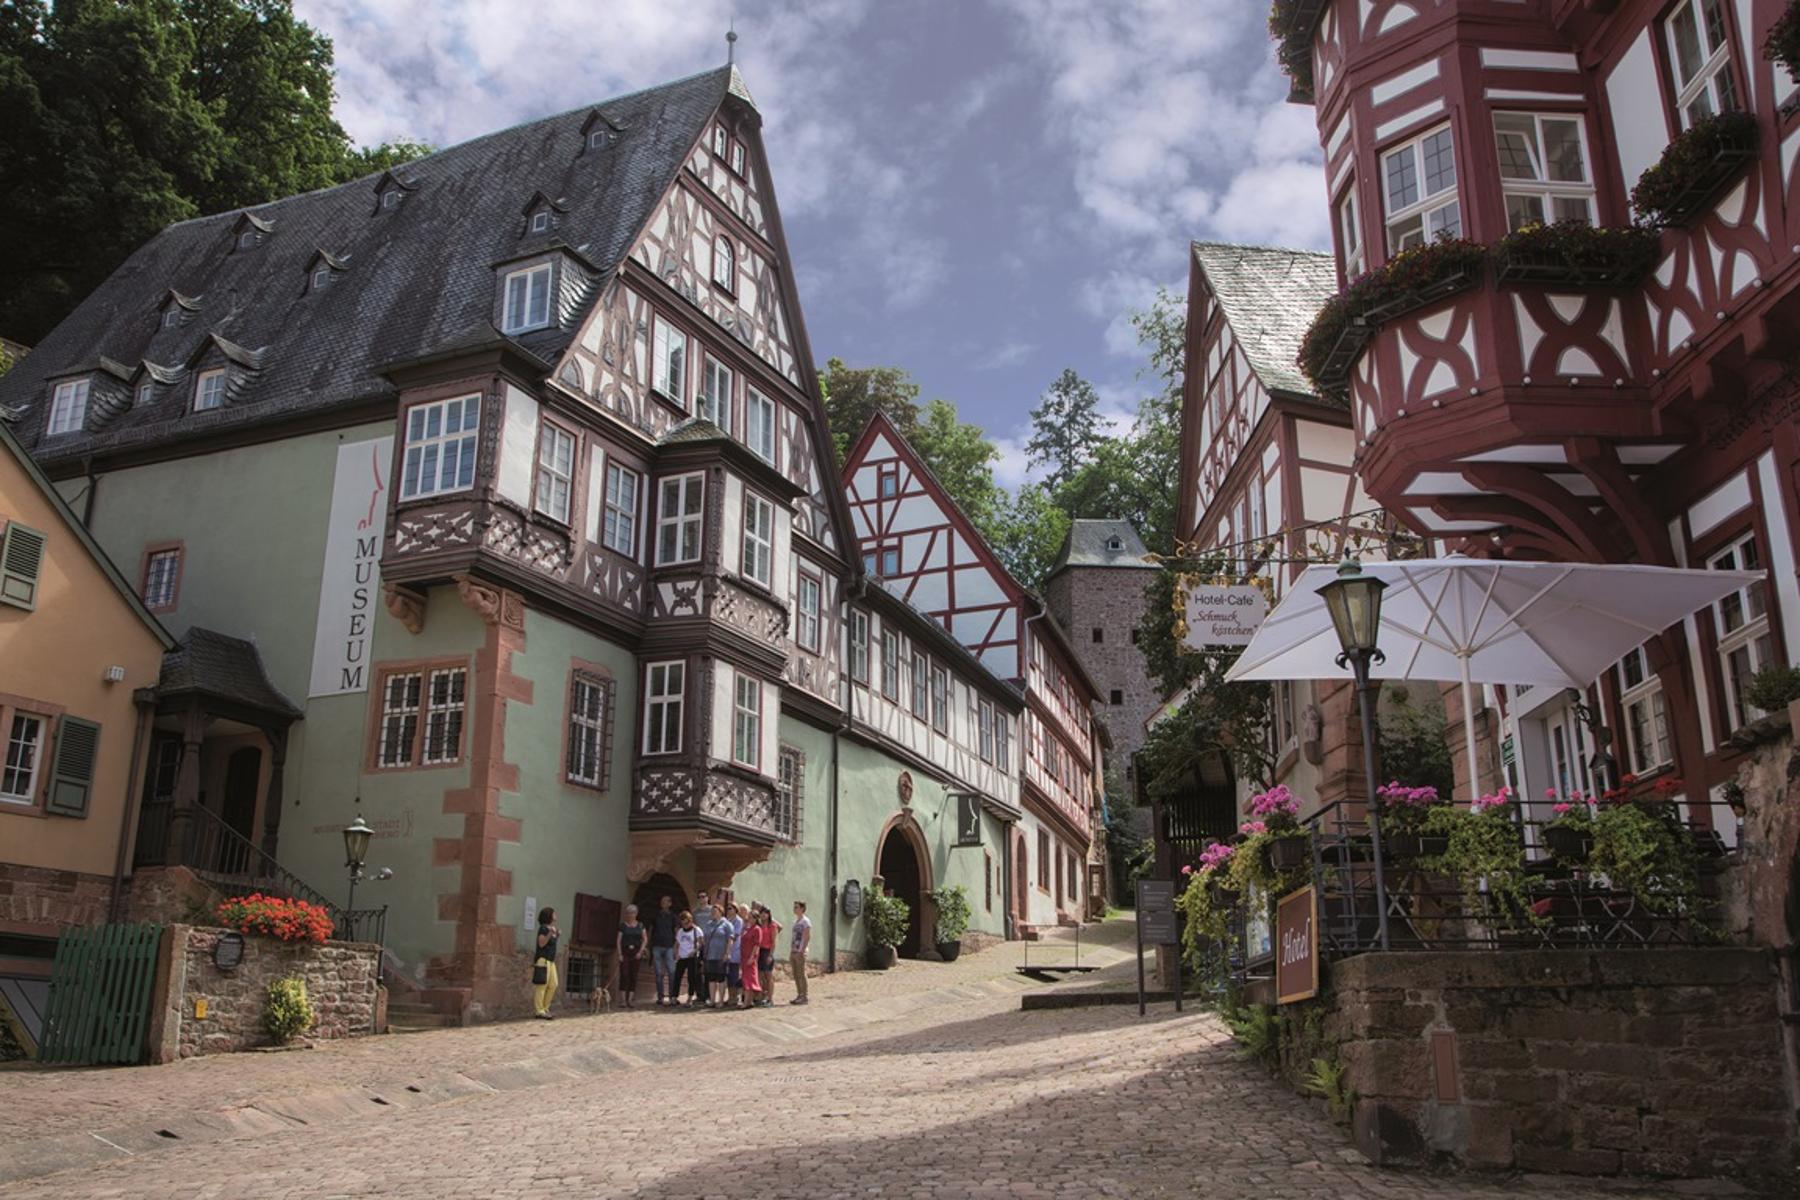 Die mittelalterliche Fachwerkstadt Miltenberg am Main lässt bei einem Tagesausflug keine Langeweile aufkommen. Das ideale Ausflugsziel für Groß und Klein.